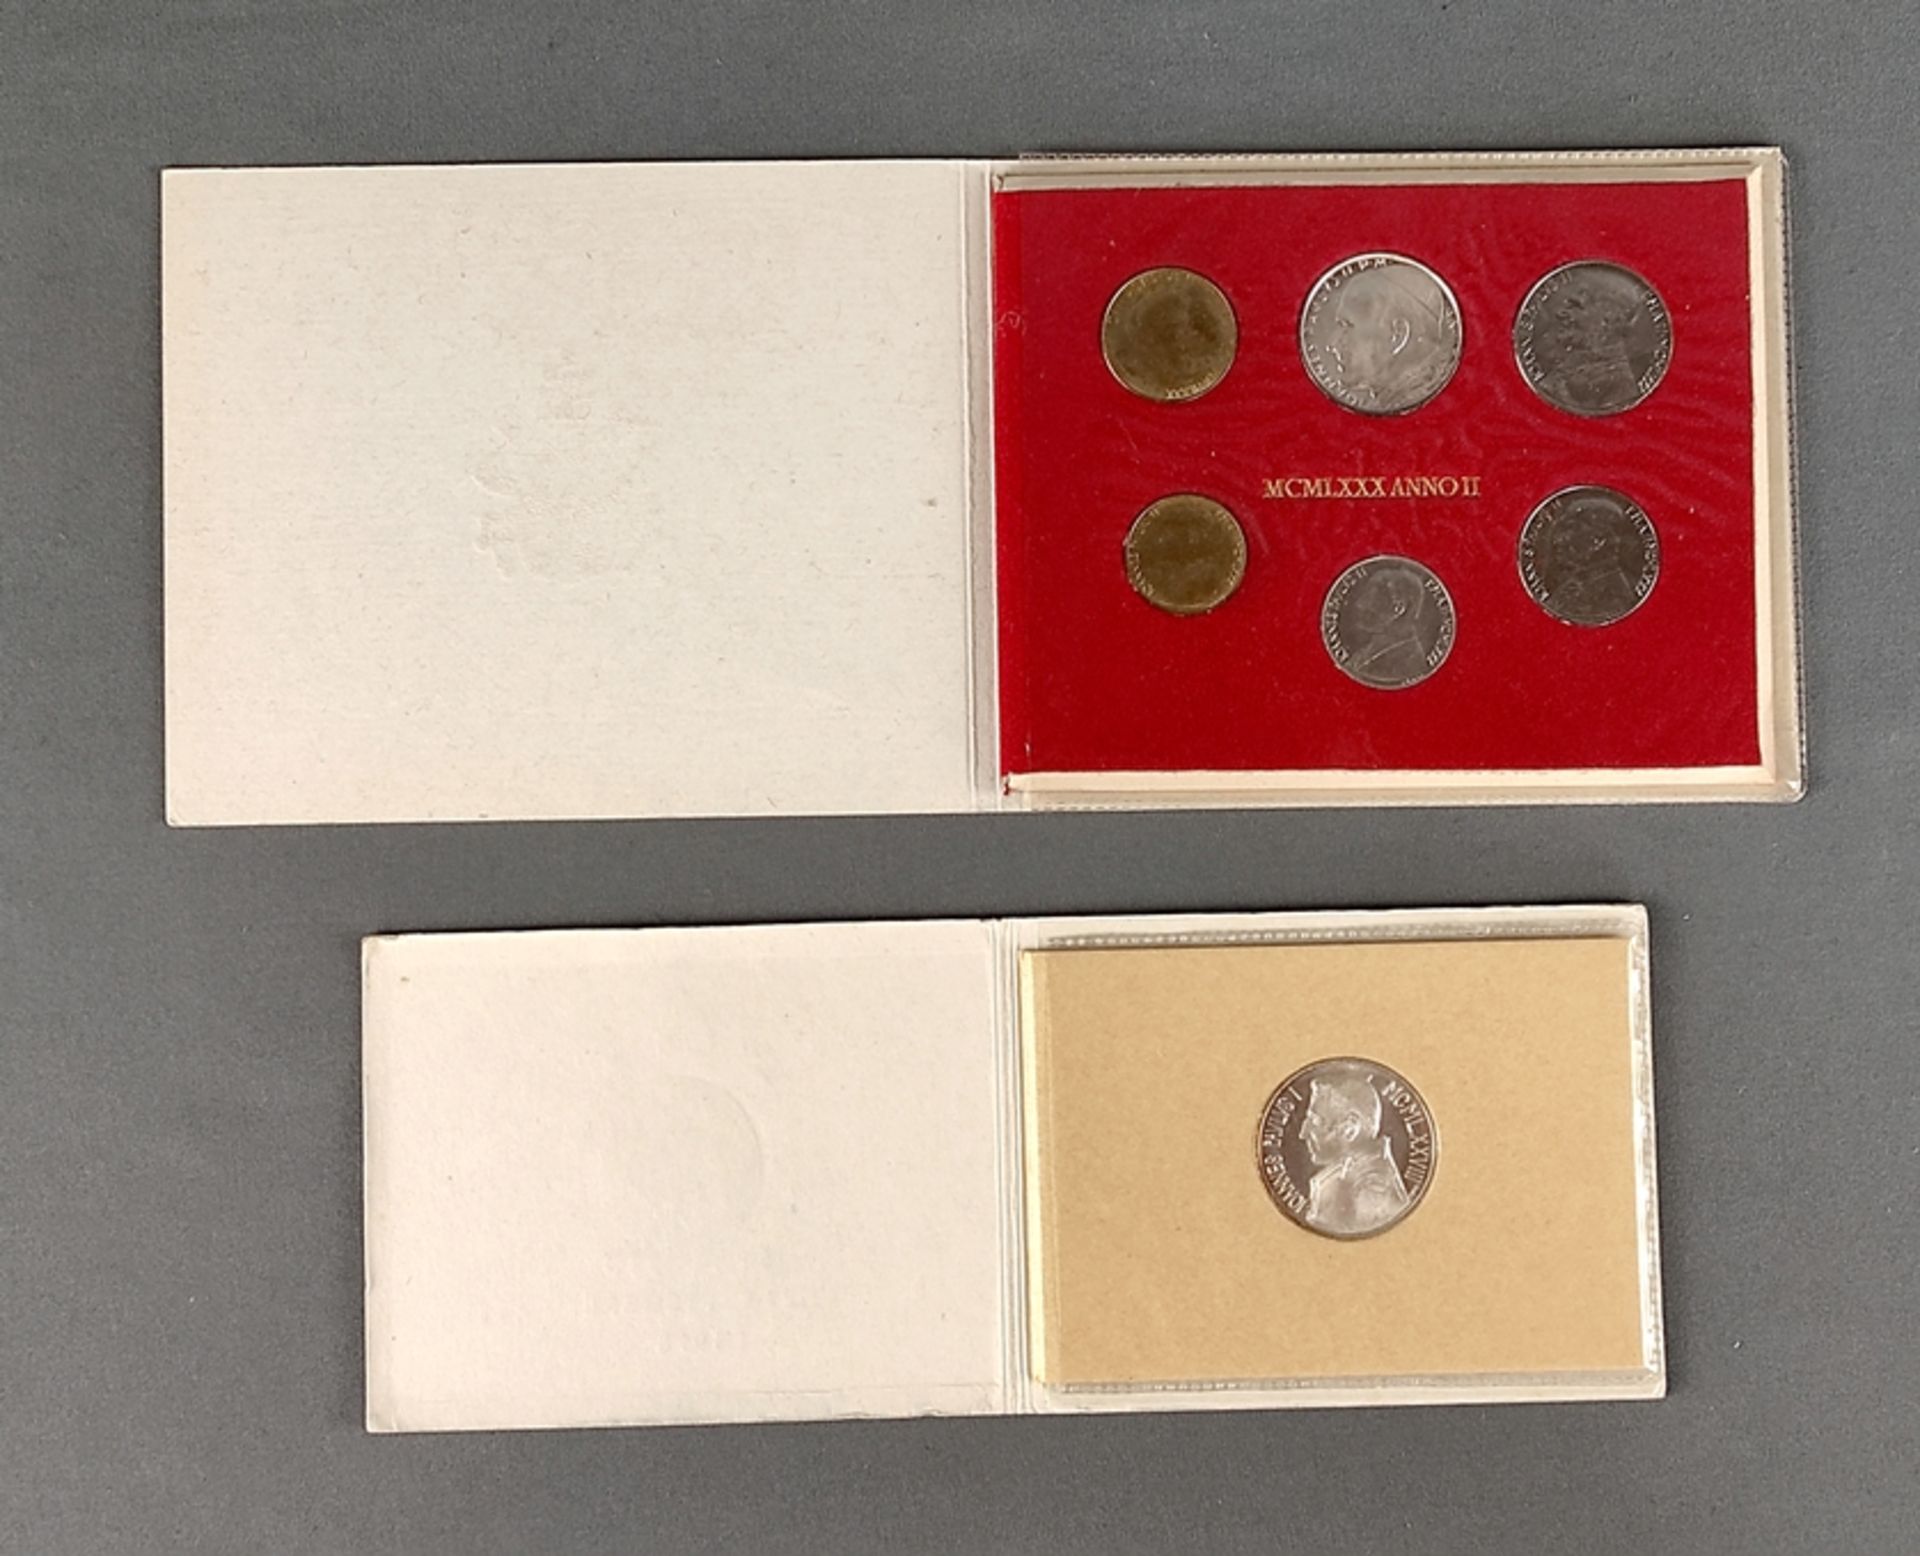 Konvolut Vatikan, Vatikan 1000 Lire Silber Johannes Paul I. KMS 1978, und Johannes Paul II. KMS 198 - Bild 2 aus 3